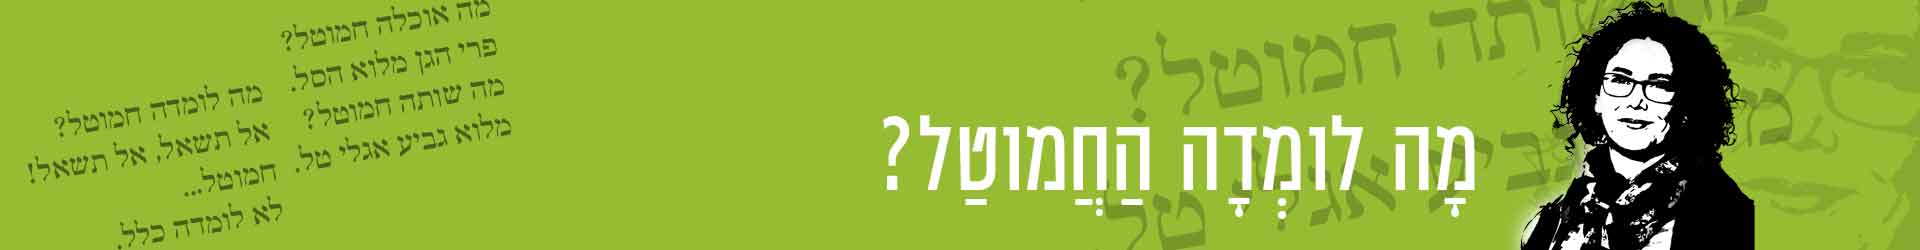 קורס בניה ירוקה מ.א.מגילות ואיגוד ערים יהודה – פגישה2 – מפגעים בזמן הבניה